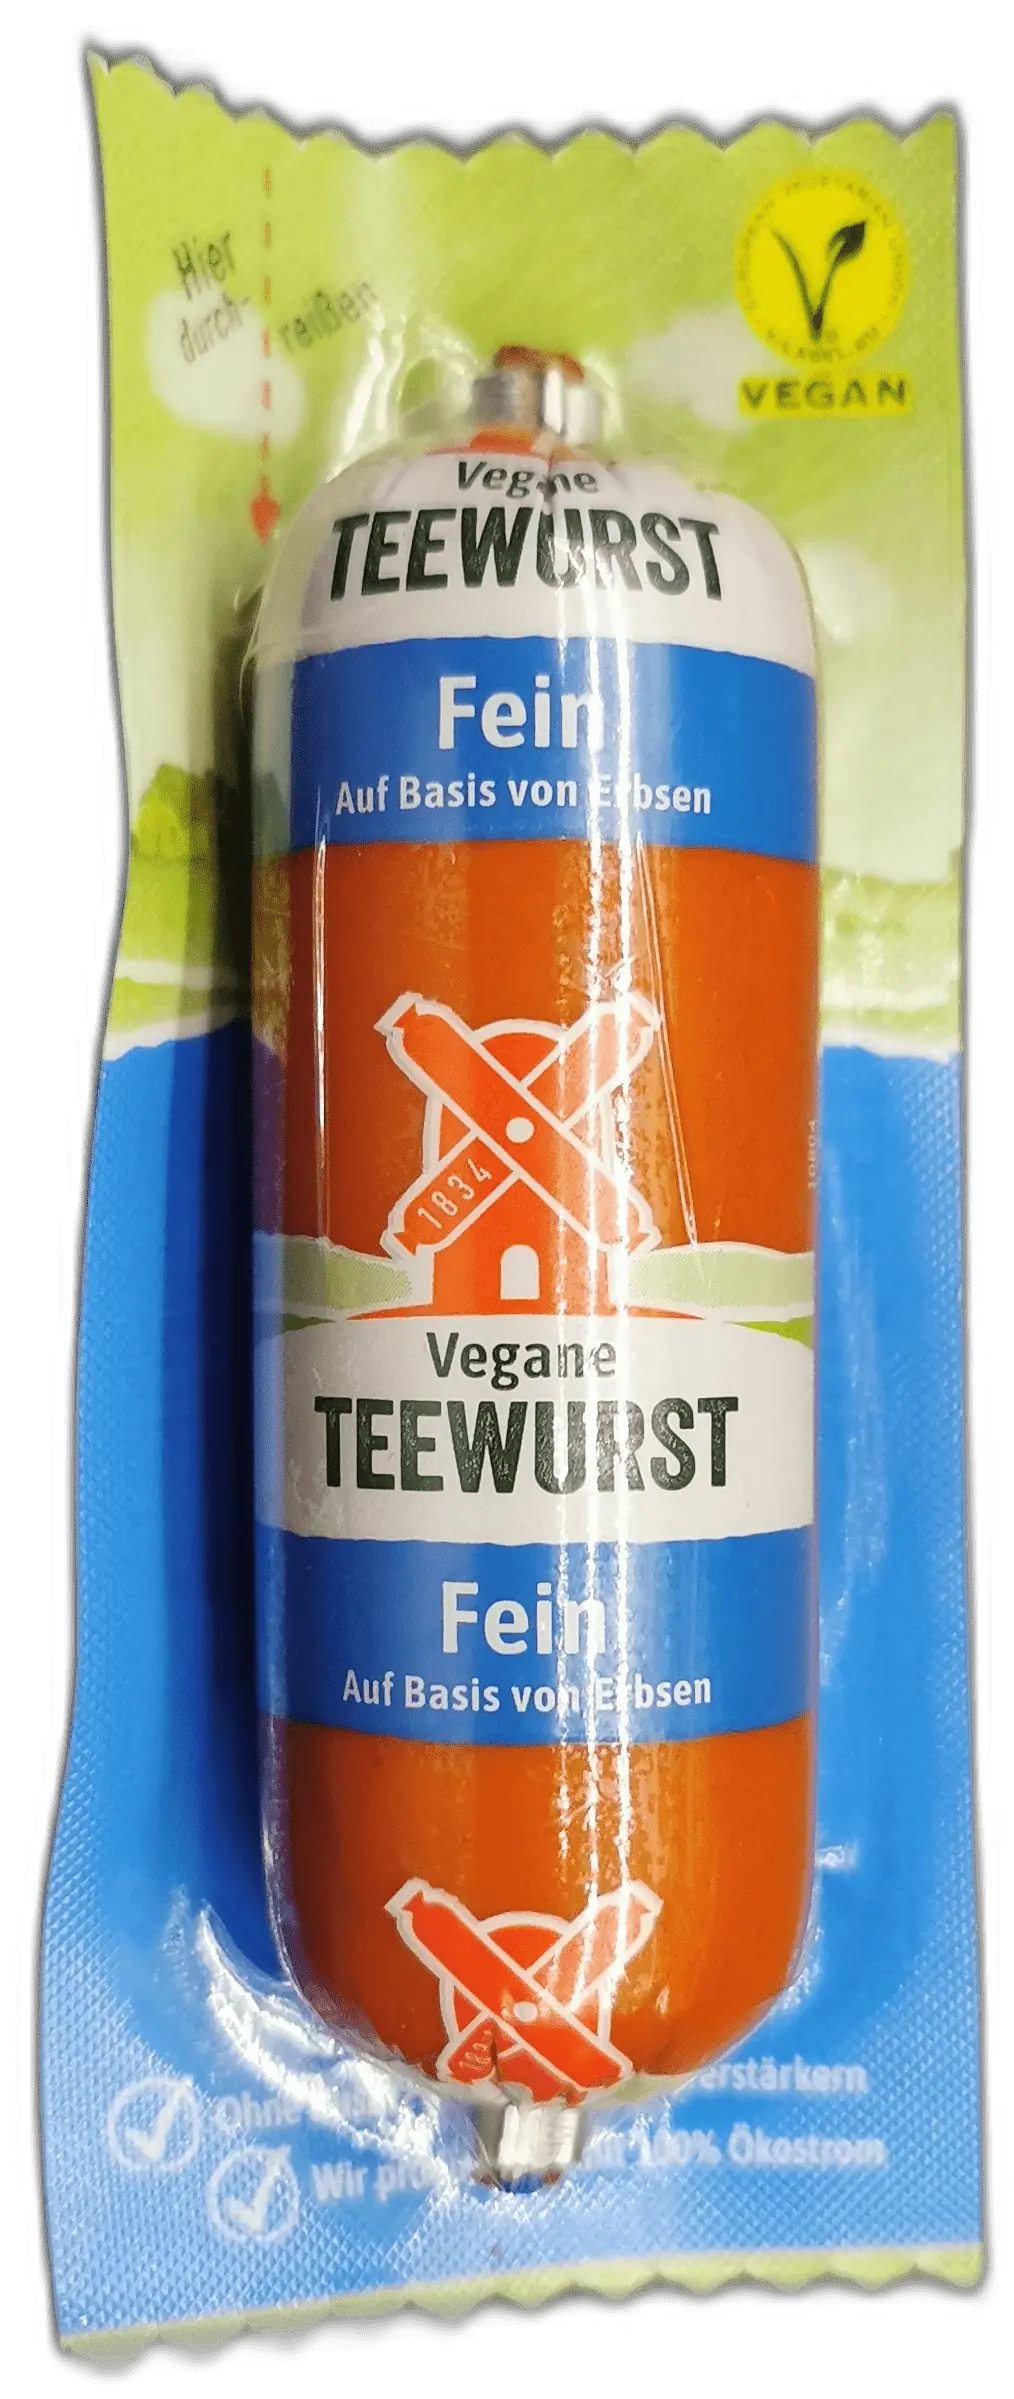 Rügenwalder Mühle: Vegane Teewurst fein